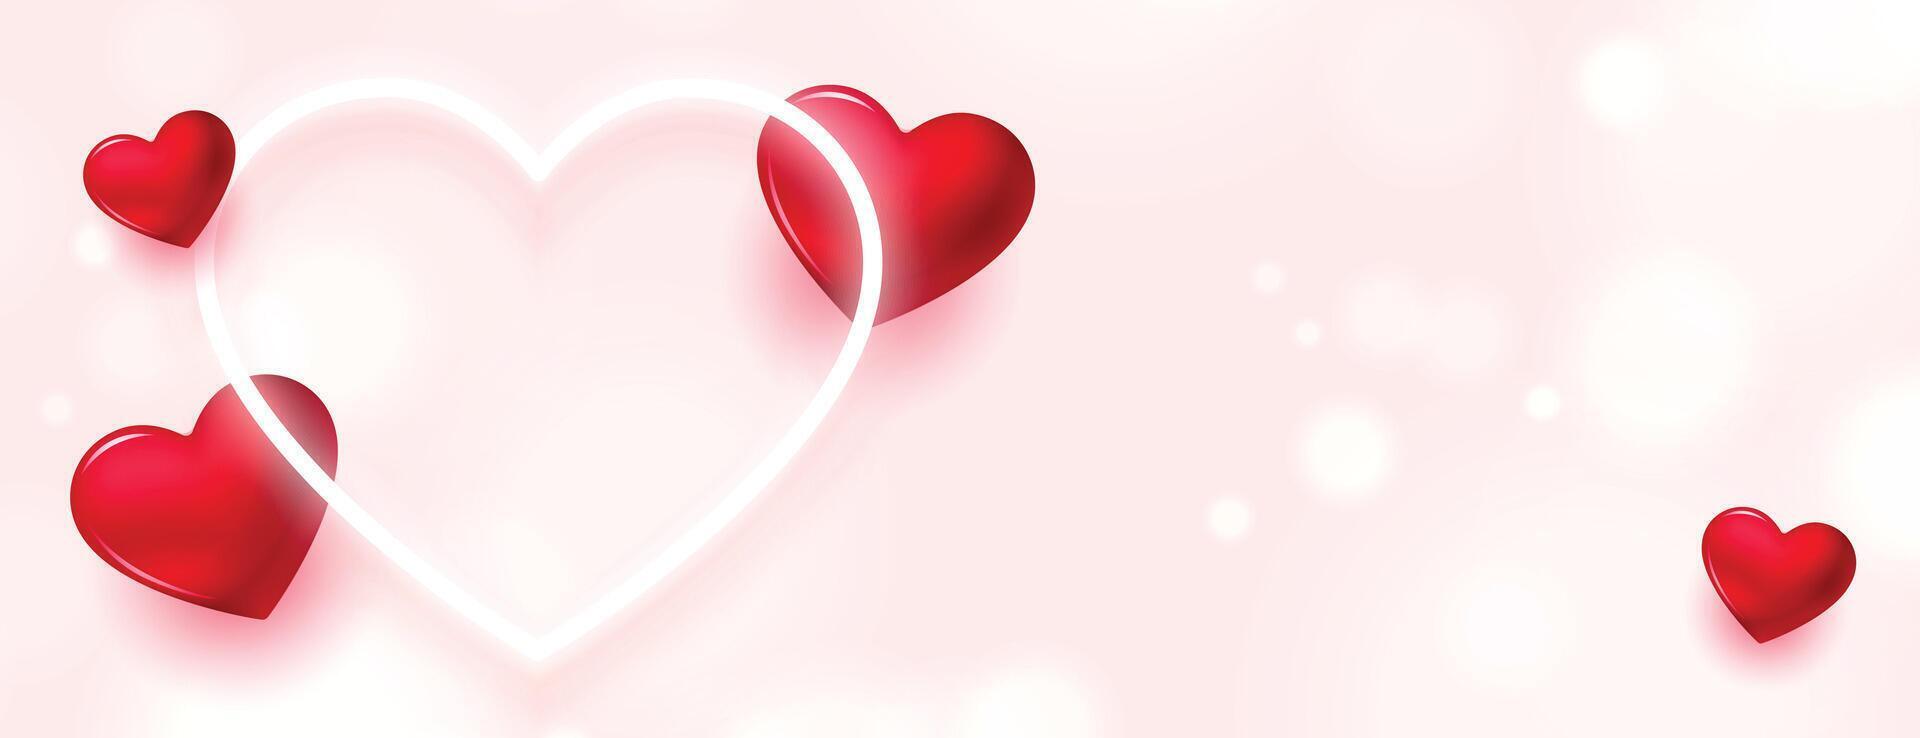 romántico san valentin día corazones bandera con neón amor corazón vector